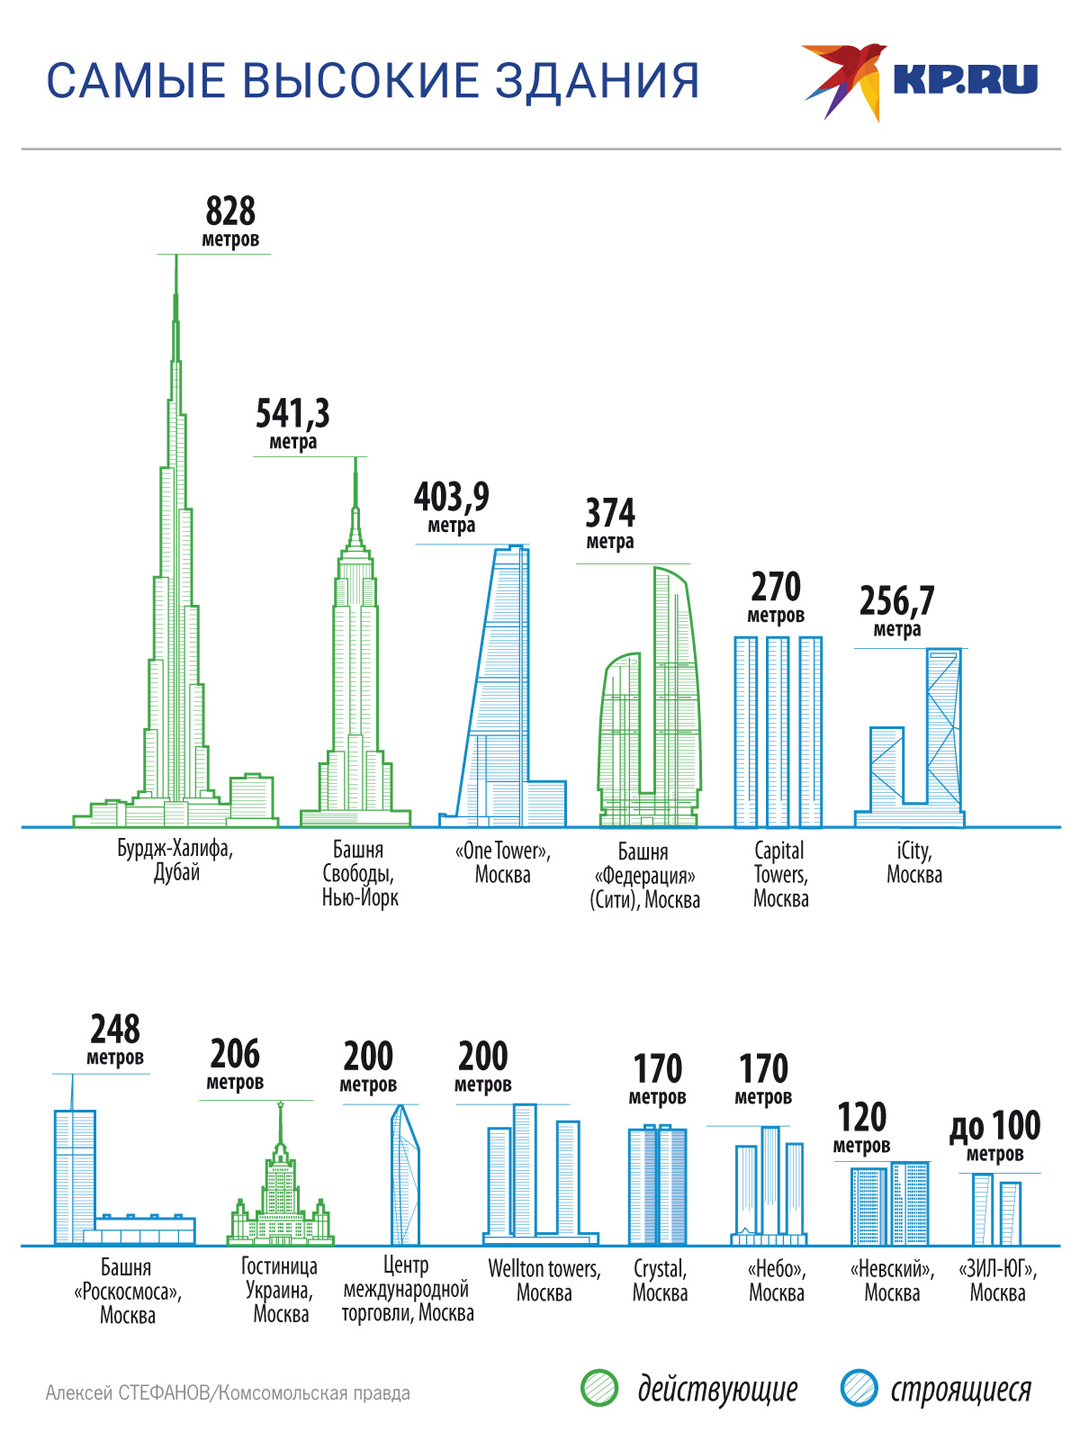 Сколько метров выше. Высота зданий Москва Сити в метрах. Здания высотой 100 метров. Москва список самых высоких зданий Москвы. Высокое здание.